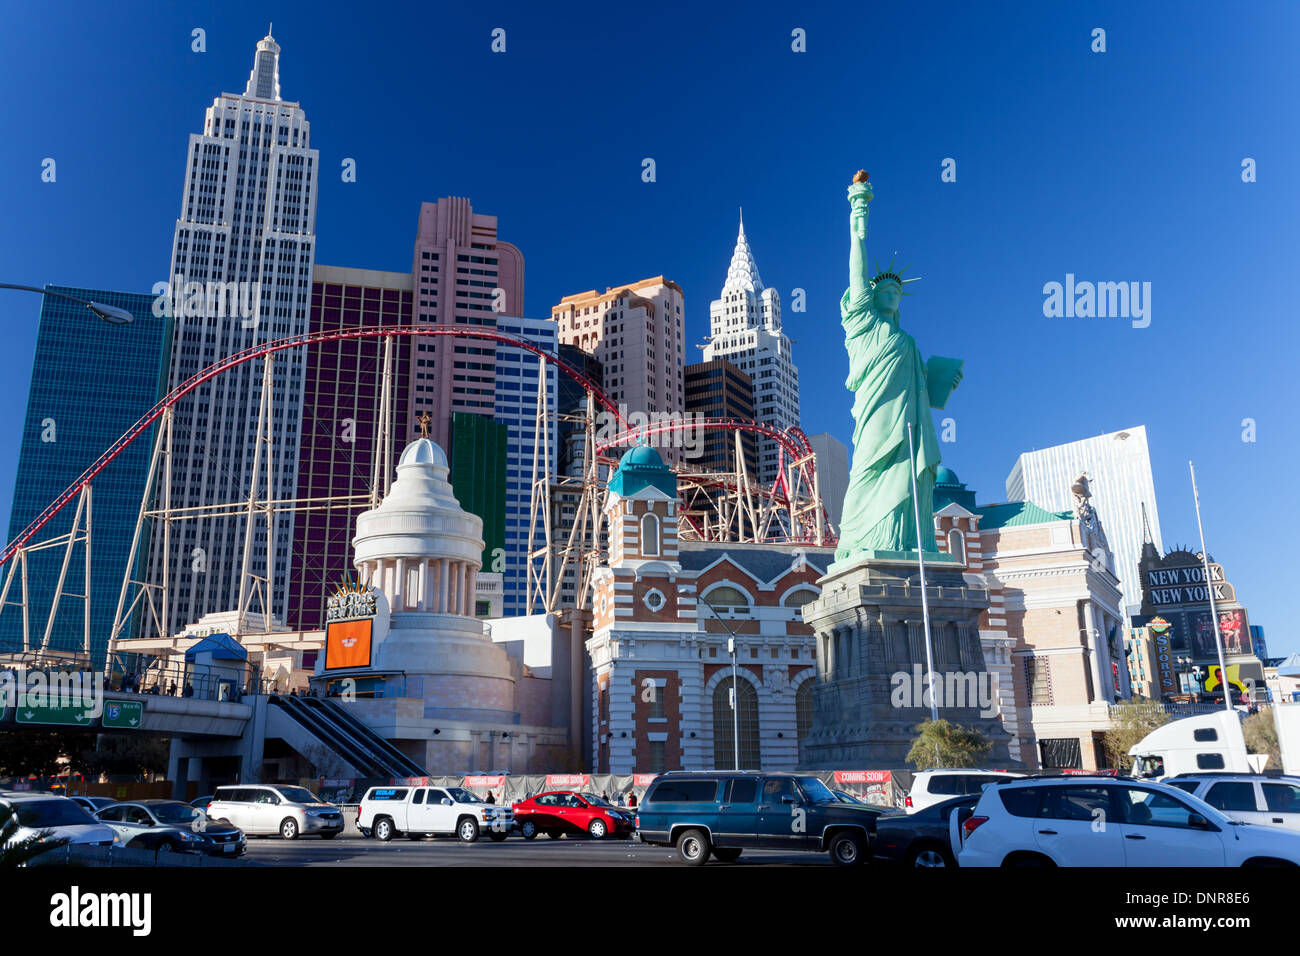 El New York New York Hotel and Casino en Las Vegas Foto de stock